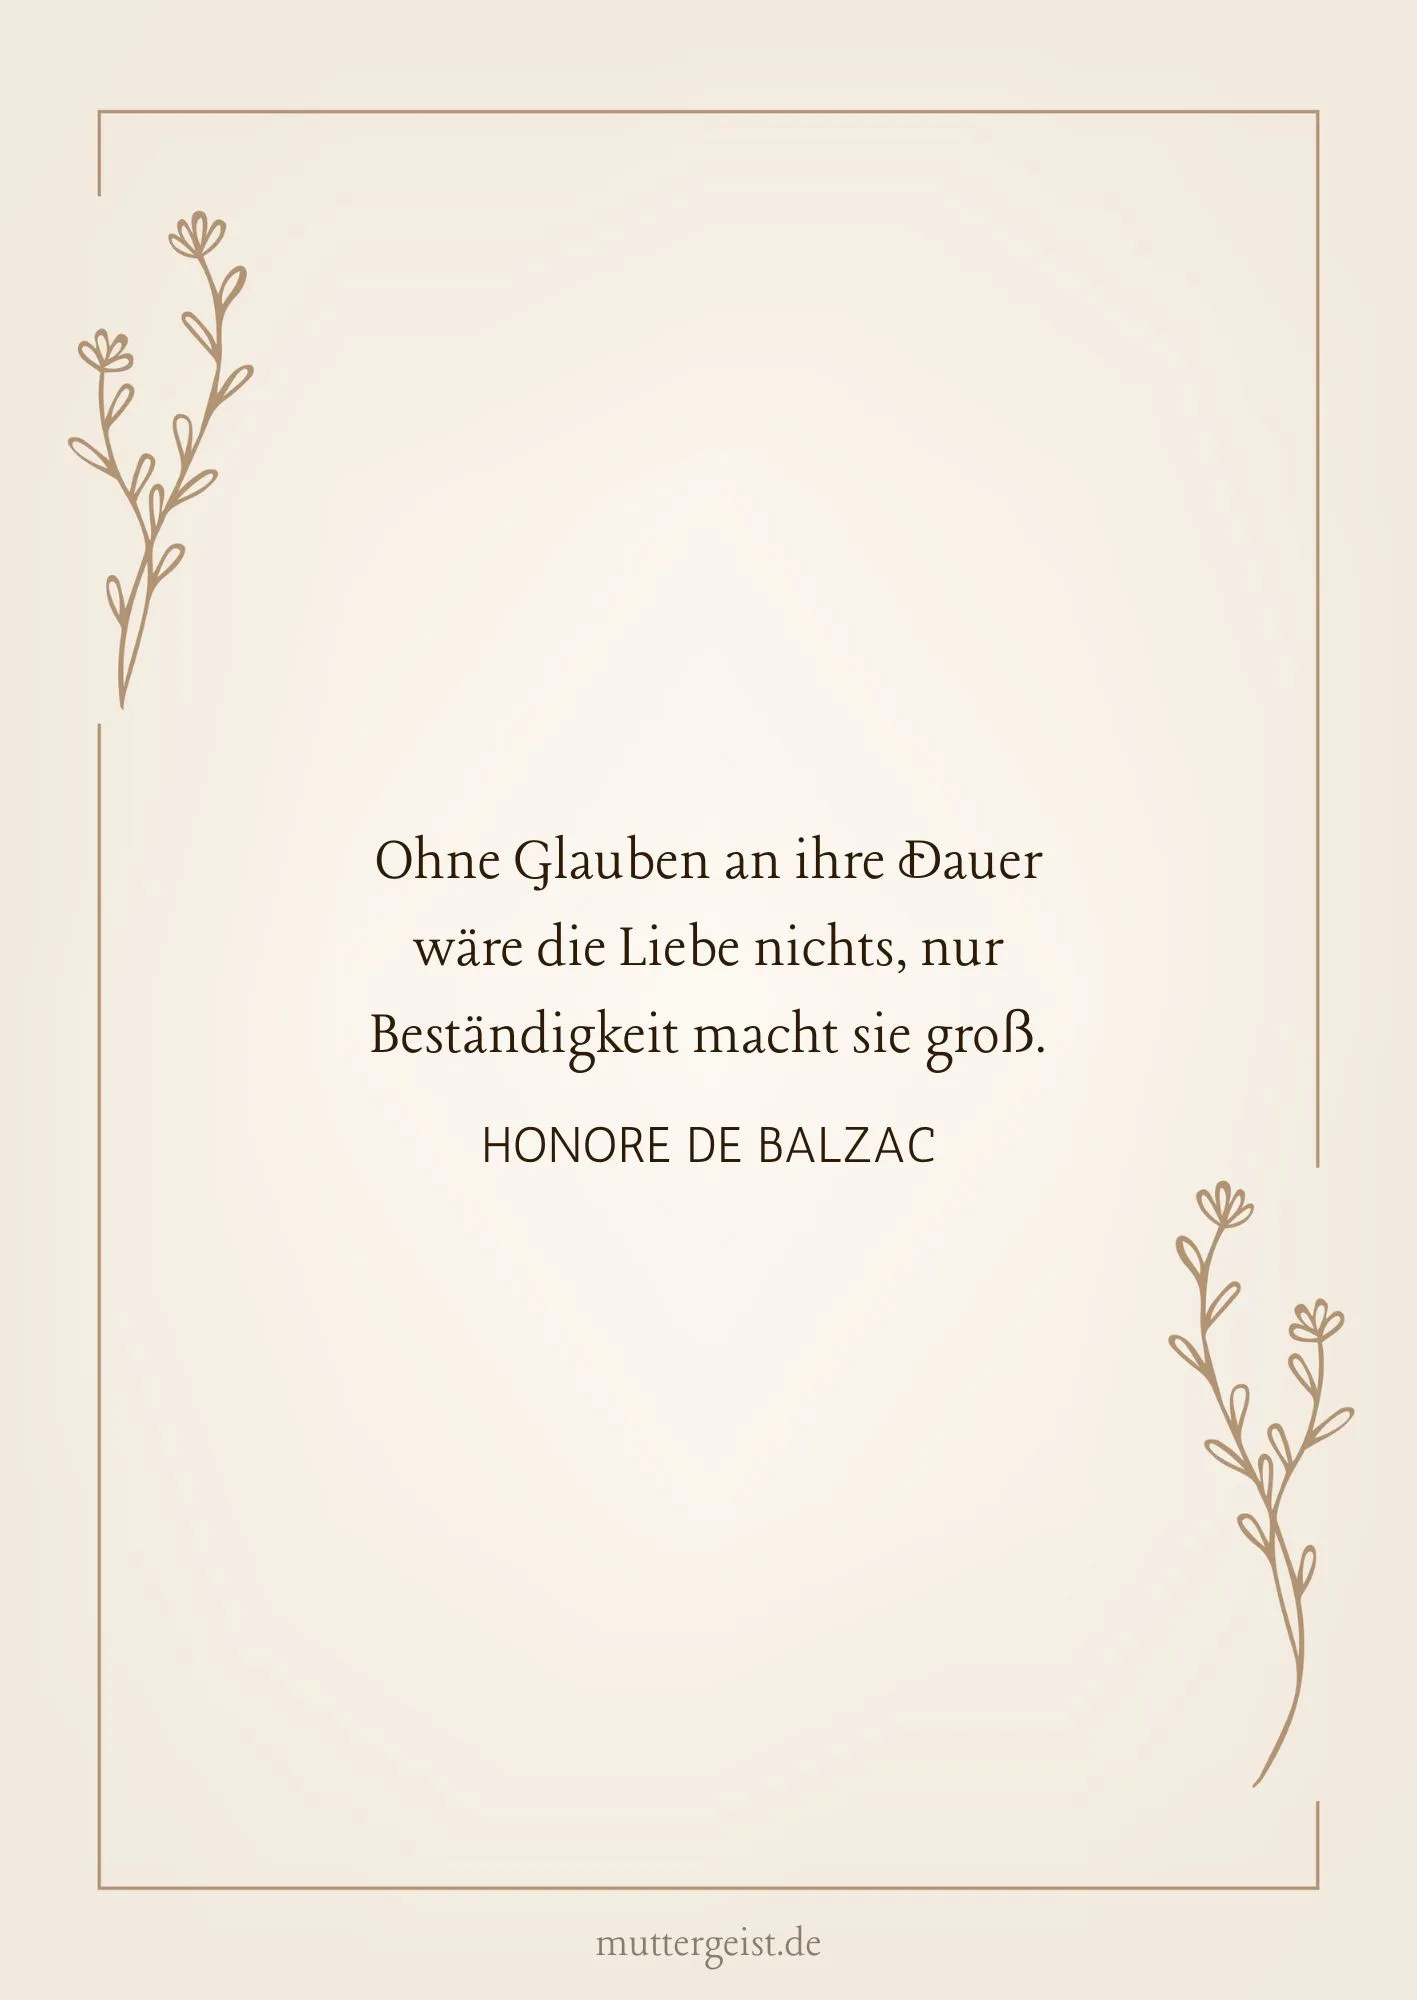 Honore de Balzacs Zitat zur Goldhochzeit